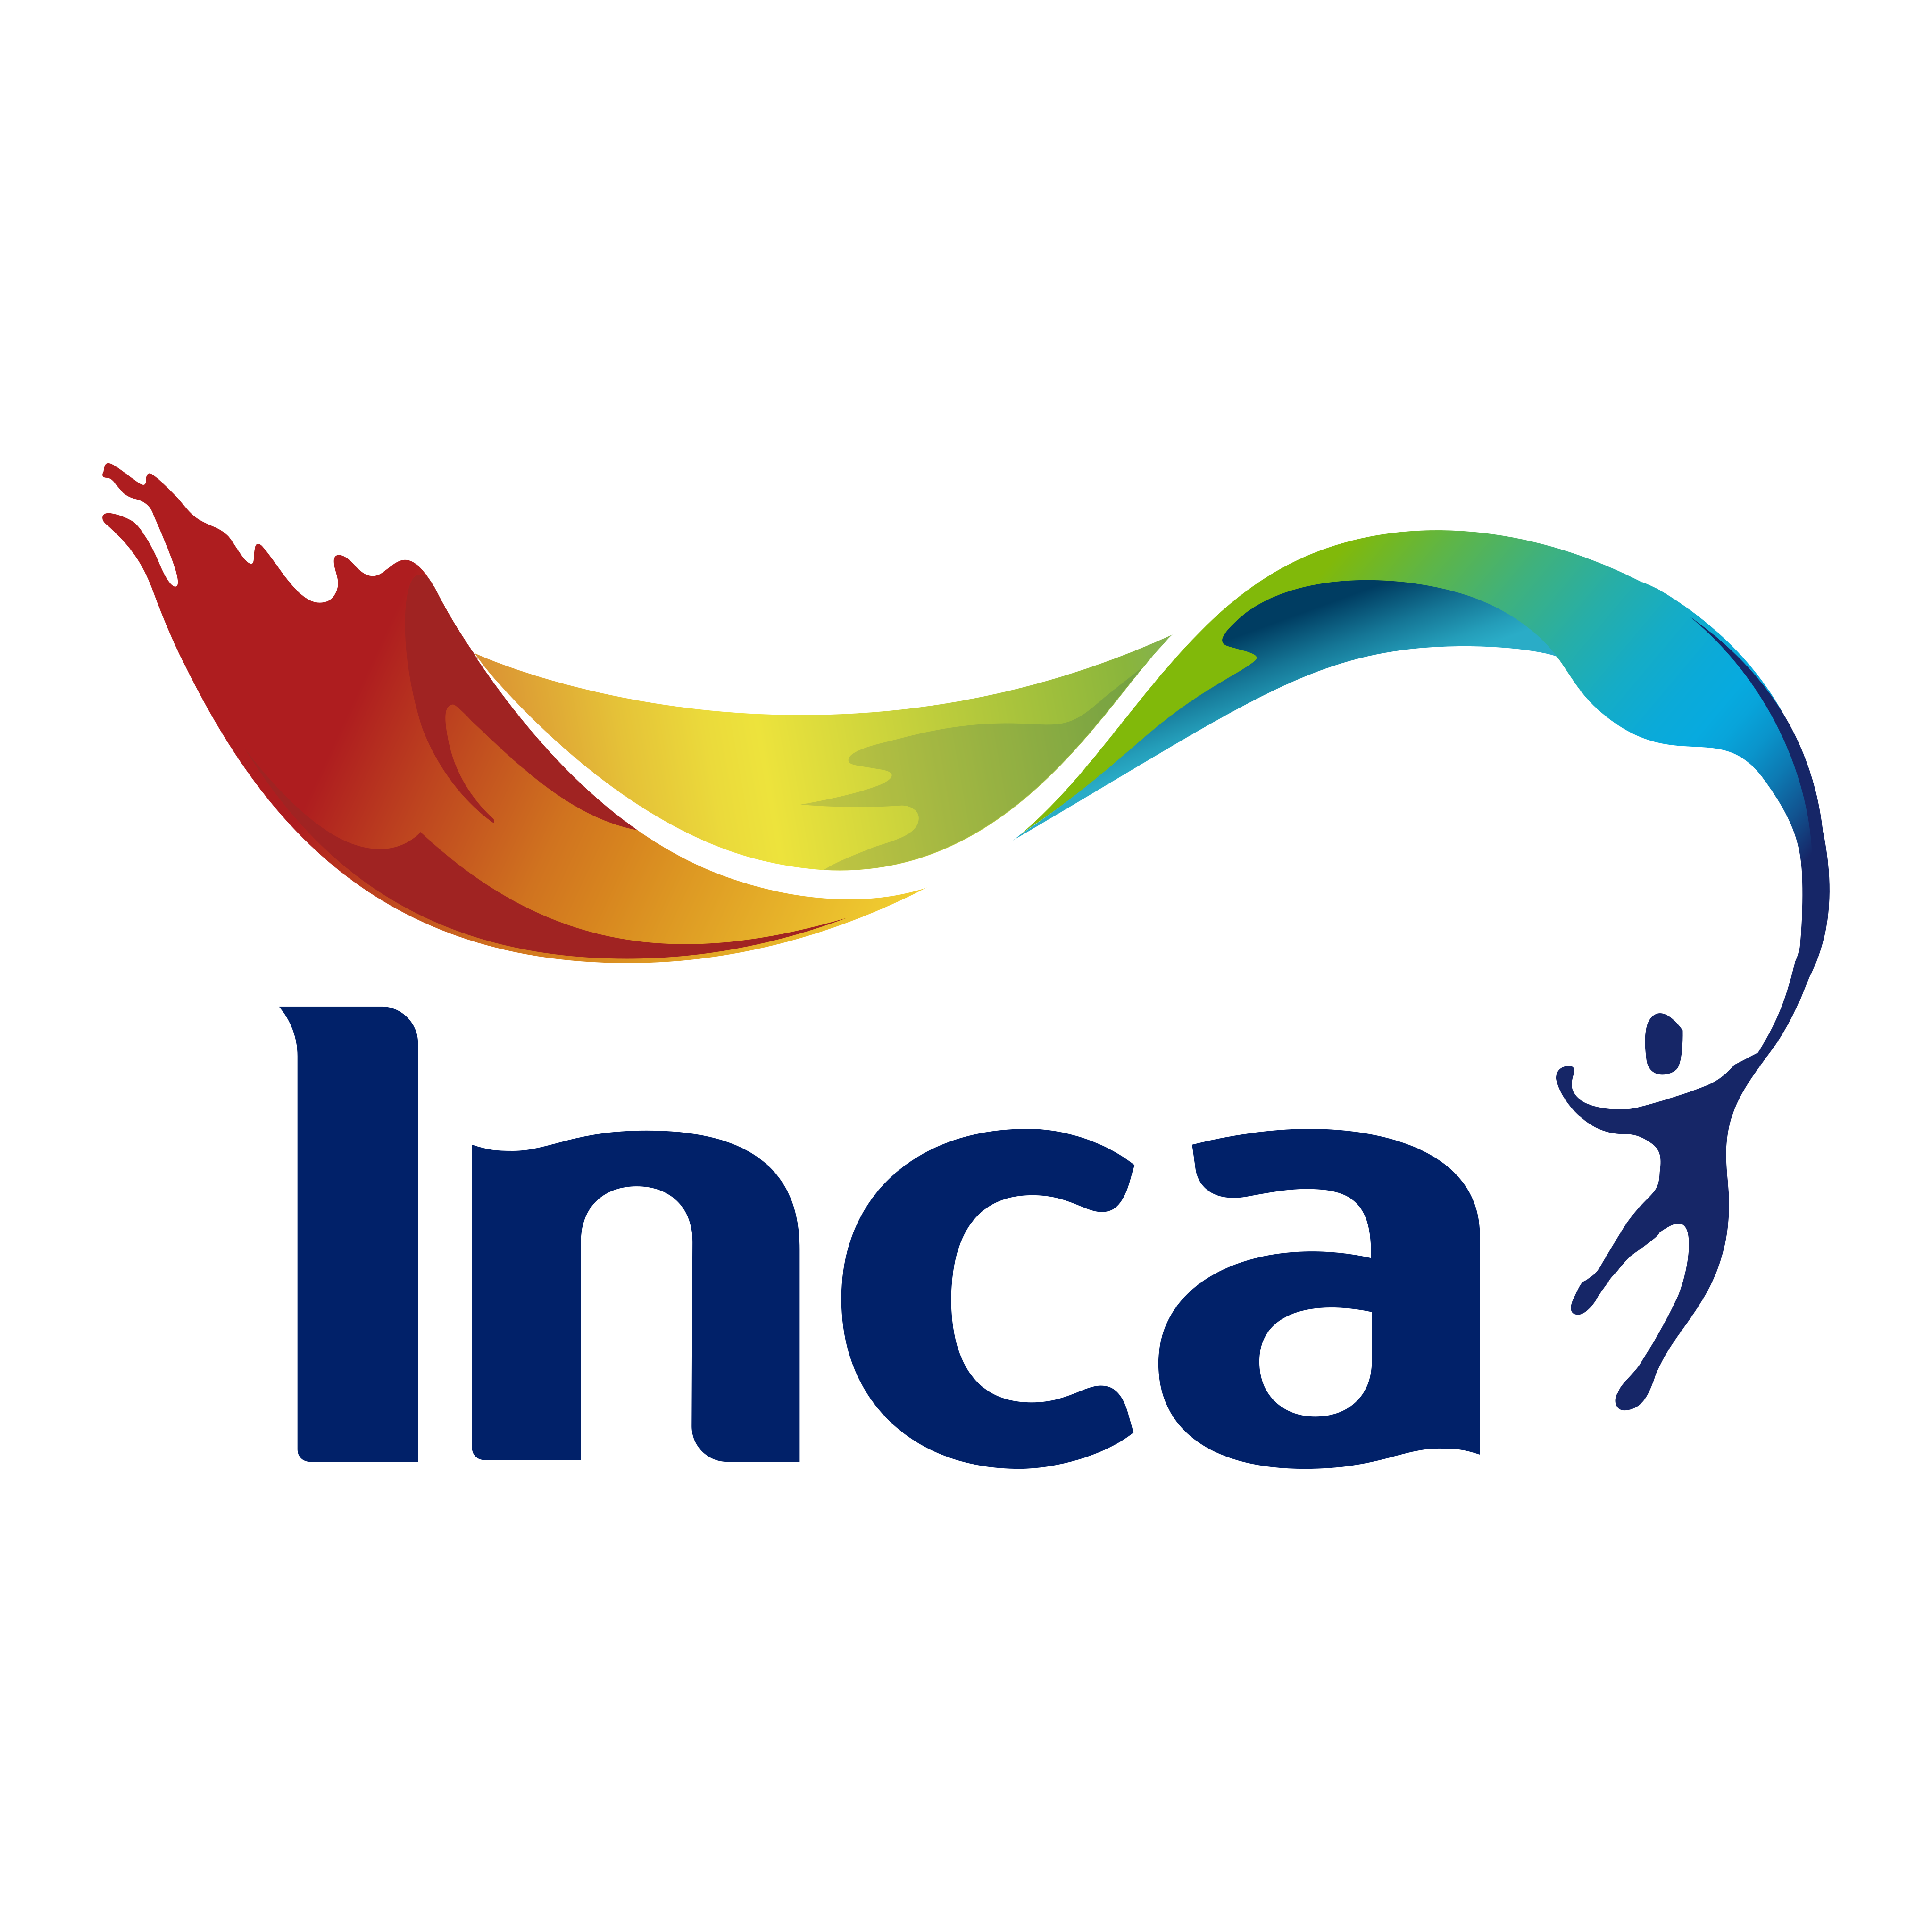 inca pinturas logo 0 - INCA Pinturas Logo